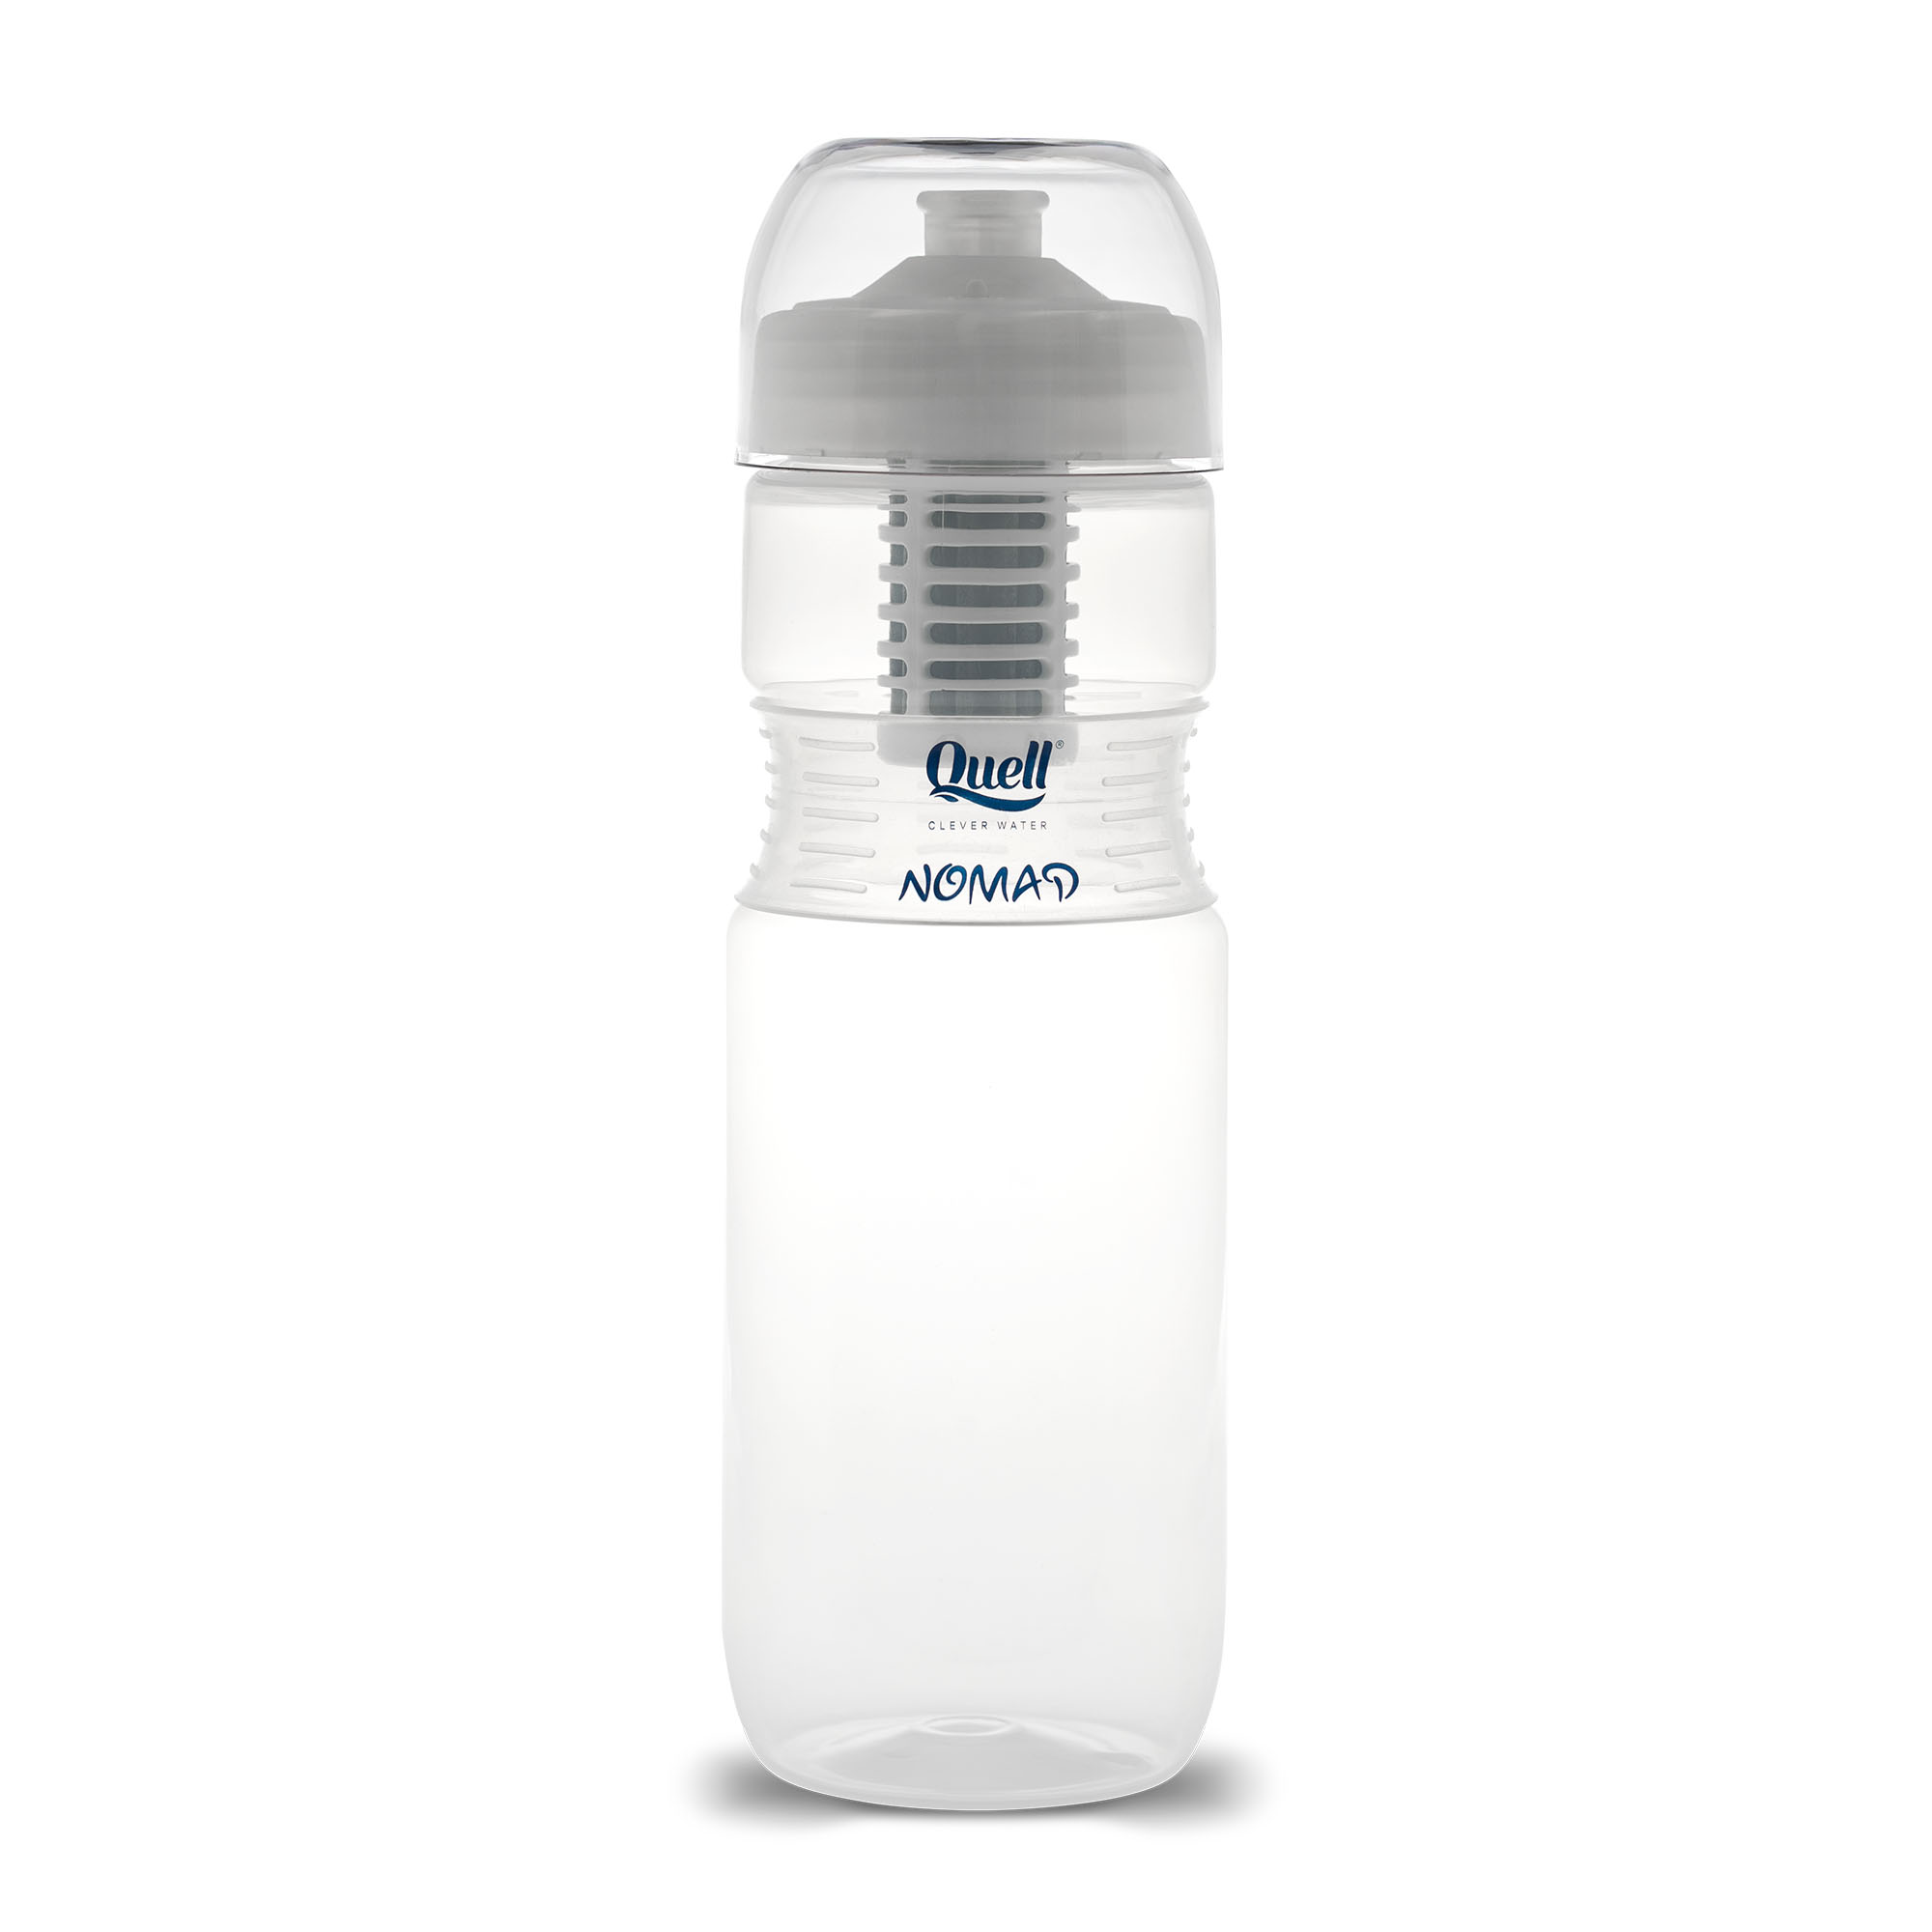 Quell NOMAD vízszűrő palack – Teszt 1 és 2